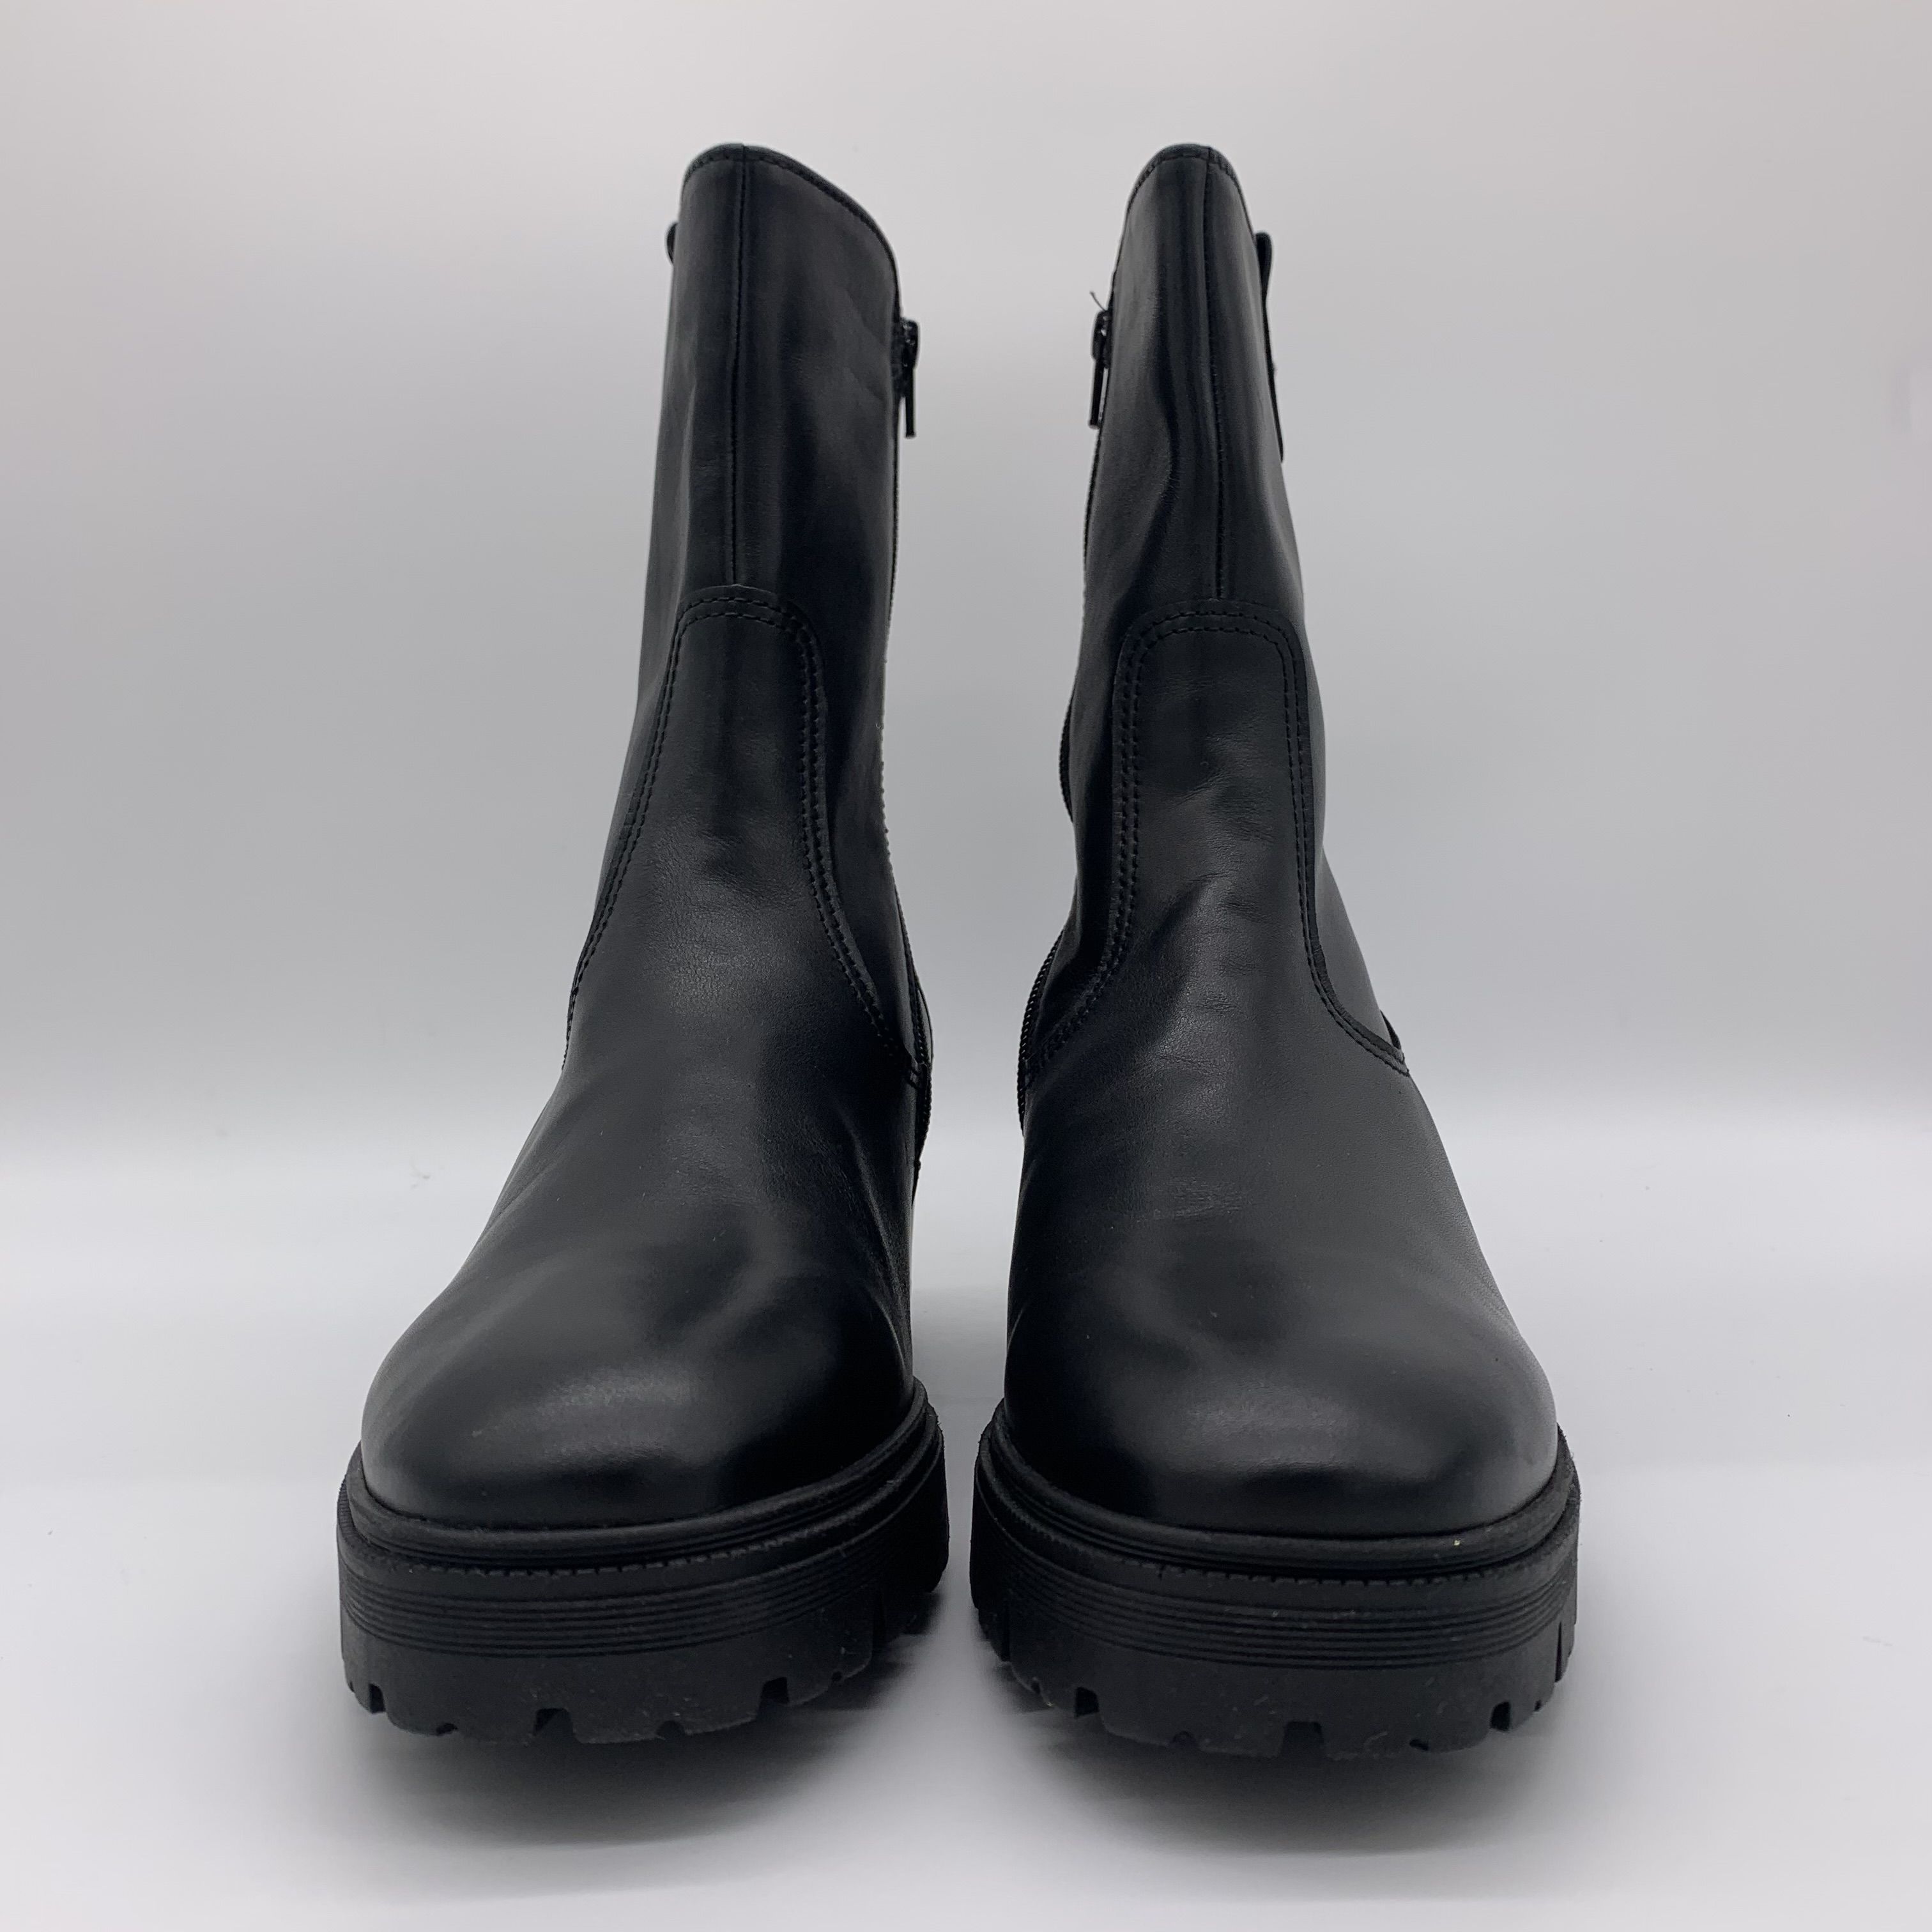 Buty damskie botki trzewiki skórzane GABOR rozmiar 44 czarne 32.810.57